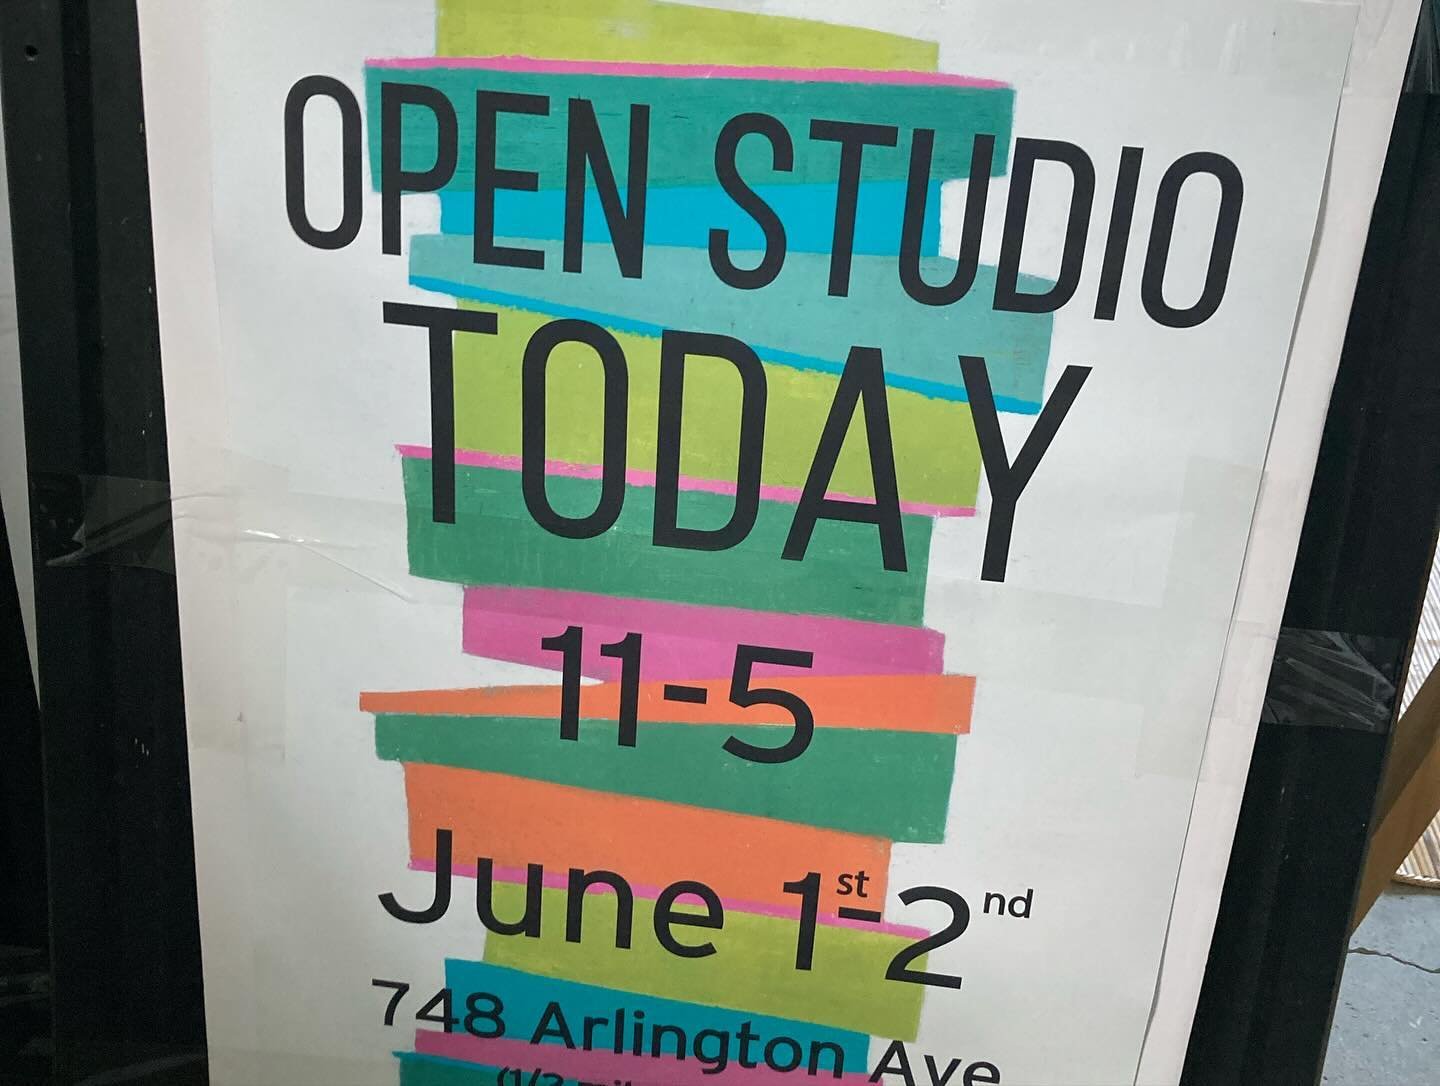 Come on over today and tomorrow for East Bay Open Studios! 
.
.
.#eastbayopenartstudios #colorunlimited #framedprintsforsale #originalpaintingsforsale#bayareaartists #interiordesign #openstudios